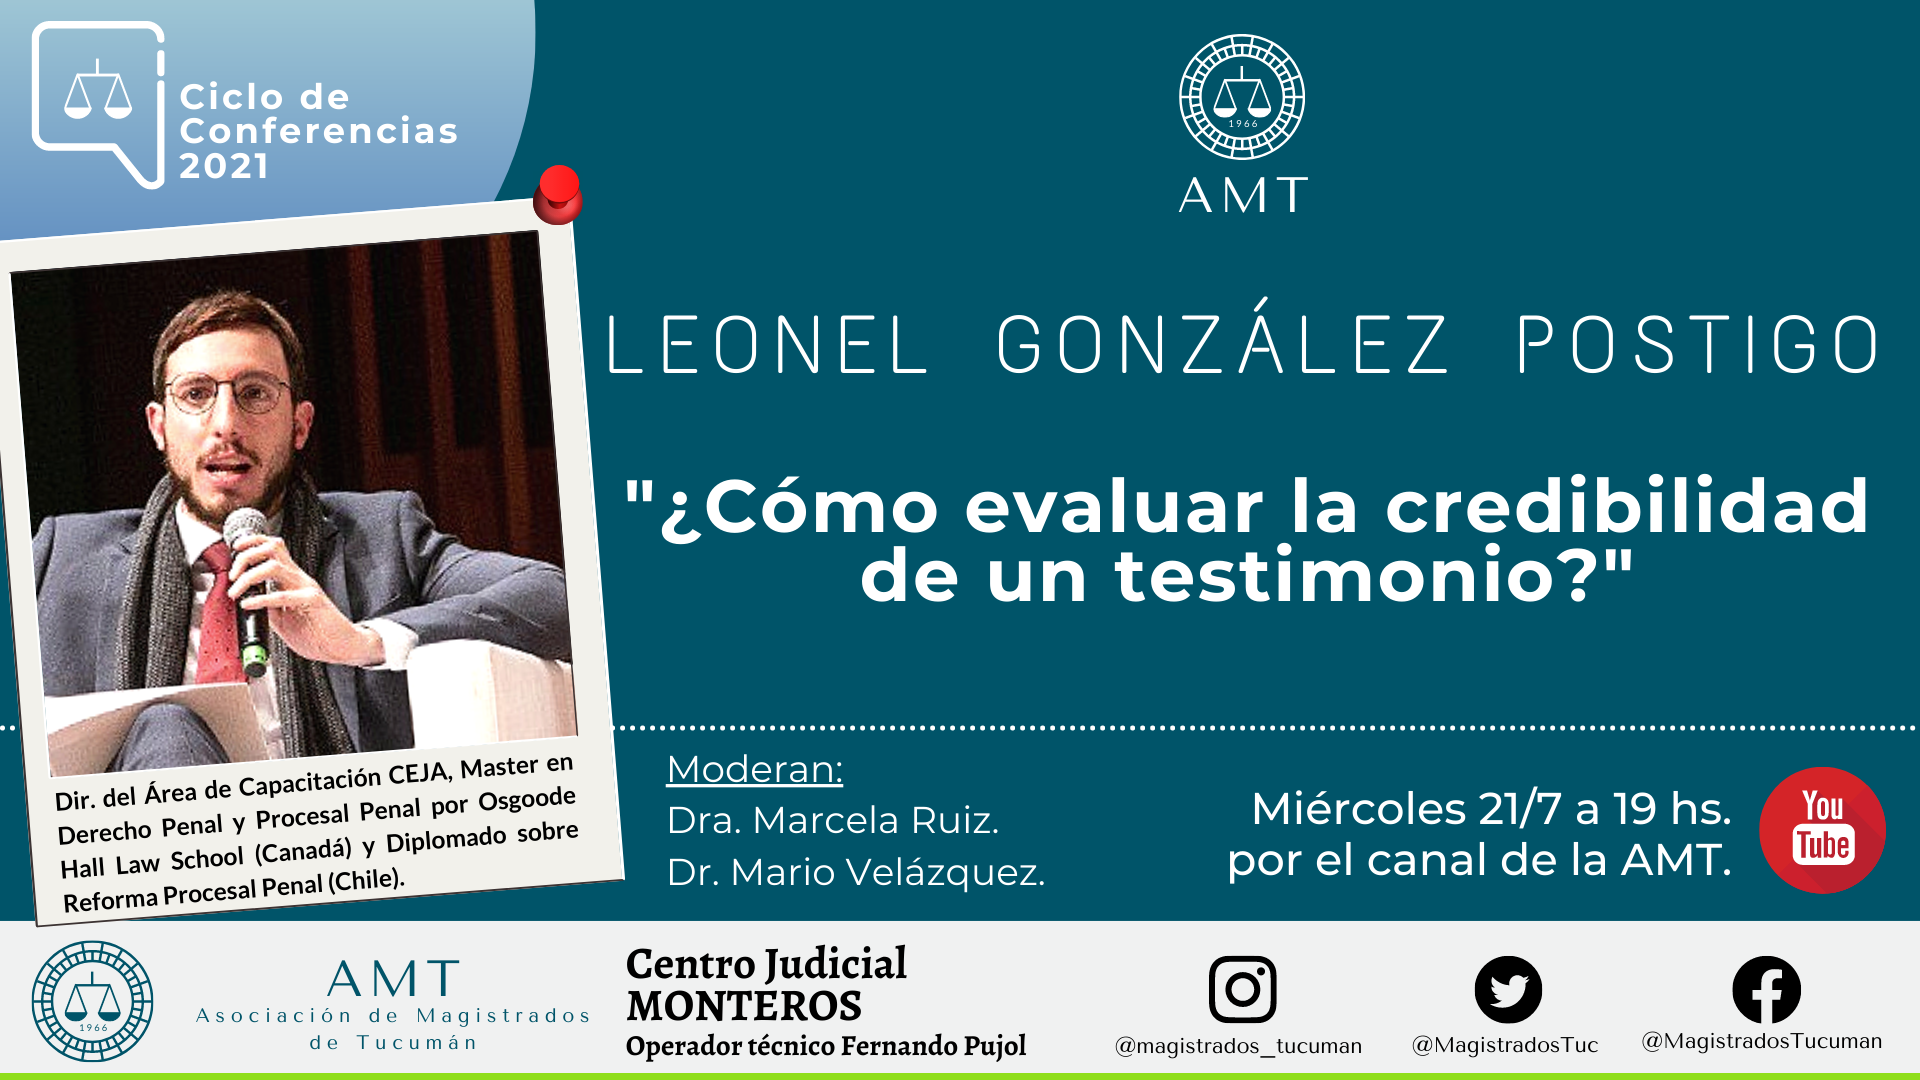 Vuelva a ver la conferencia de Leonel González Postigo «Cómo evaluar la credibilidad de un testimonio»